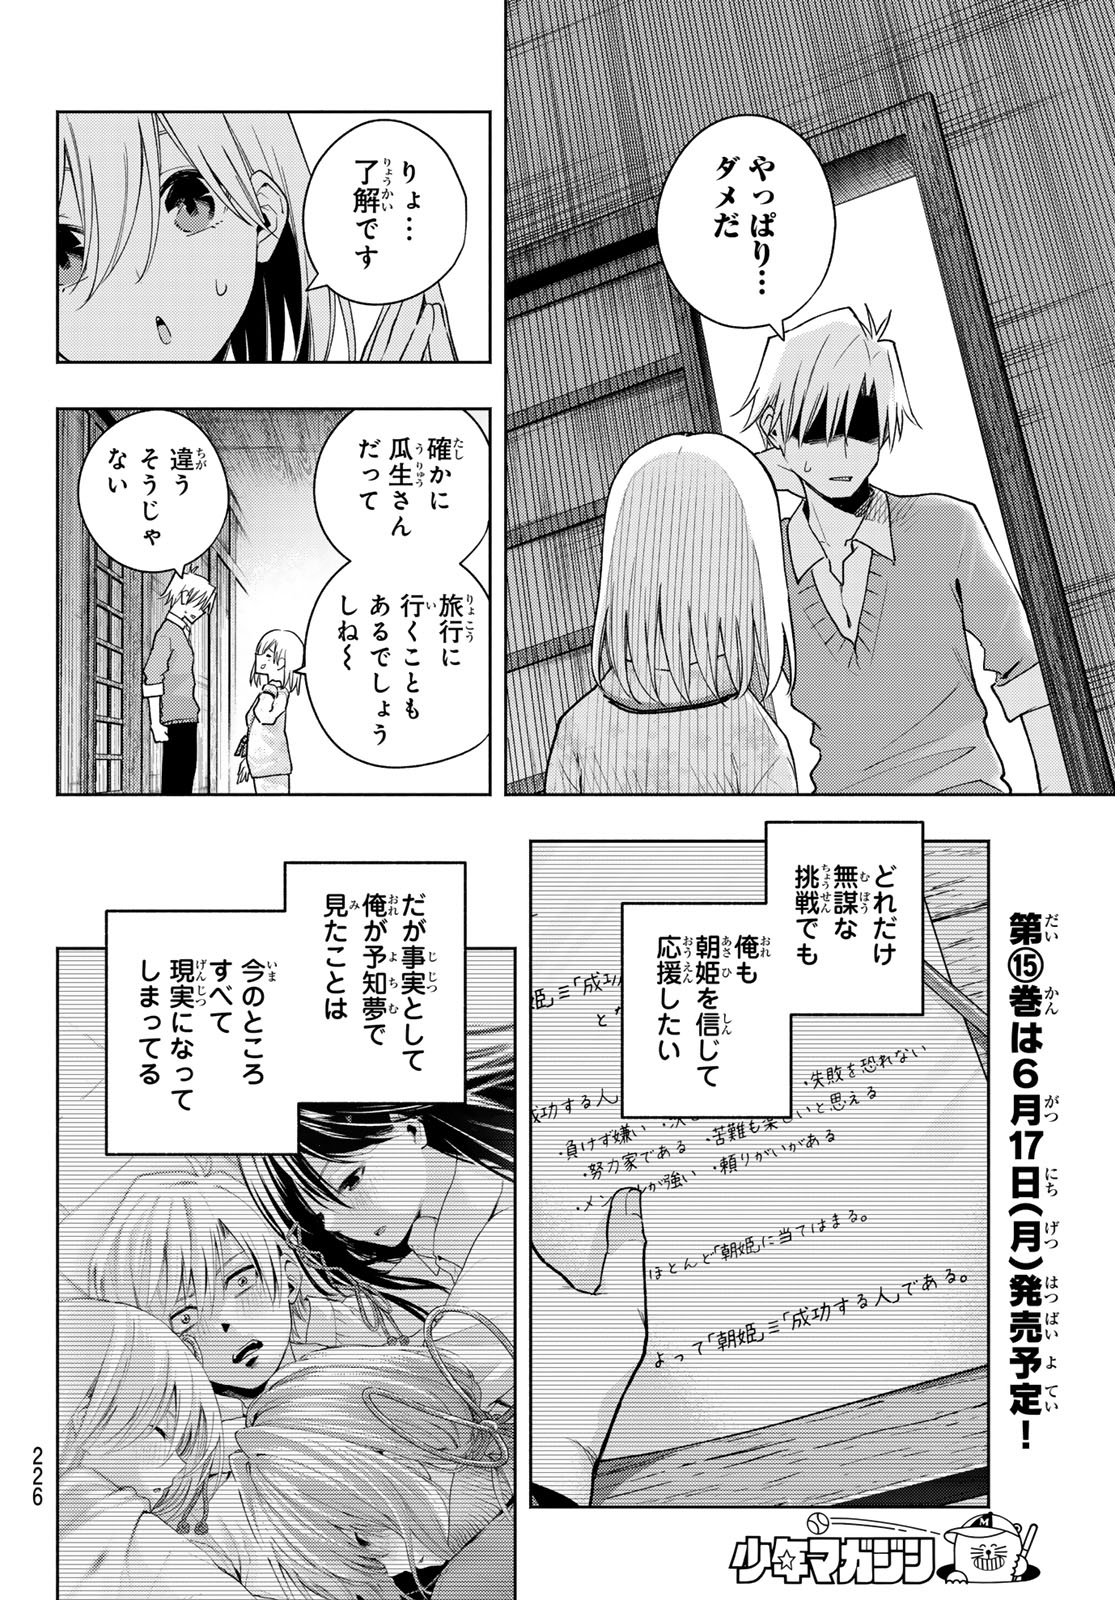 Amagami-san Chi no Enmusubi - Chapter 135 - Page 8